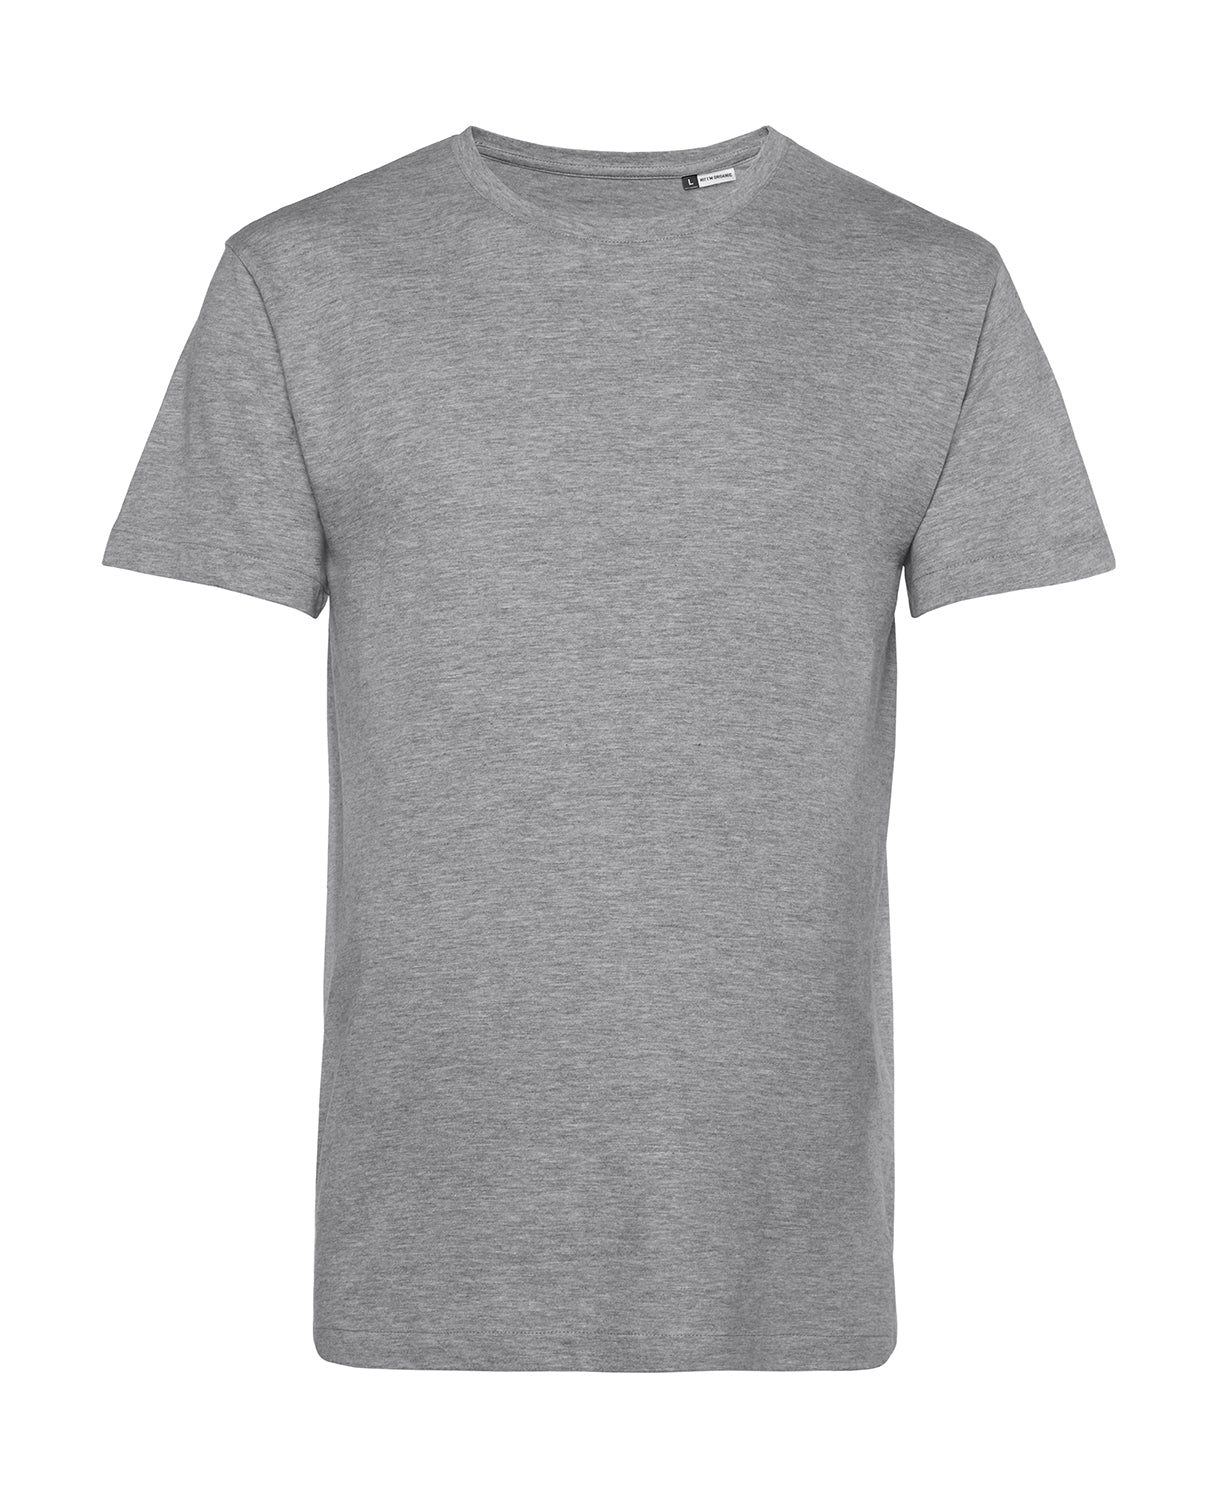 Männer T-Shirt | heather-grey